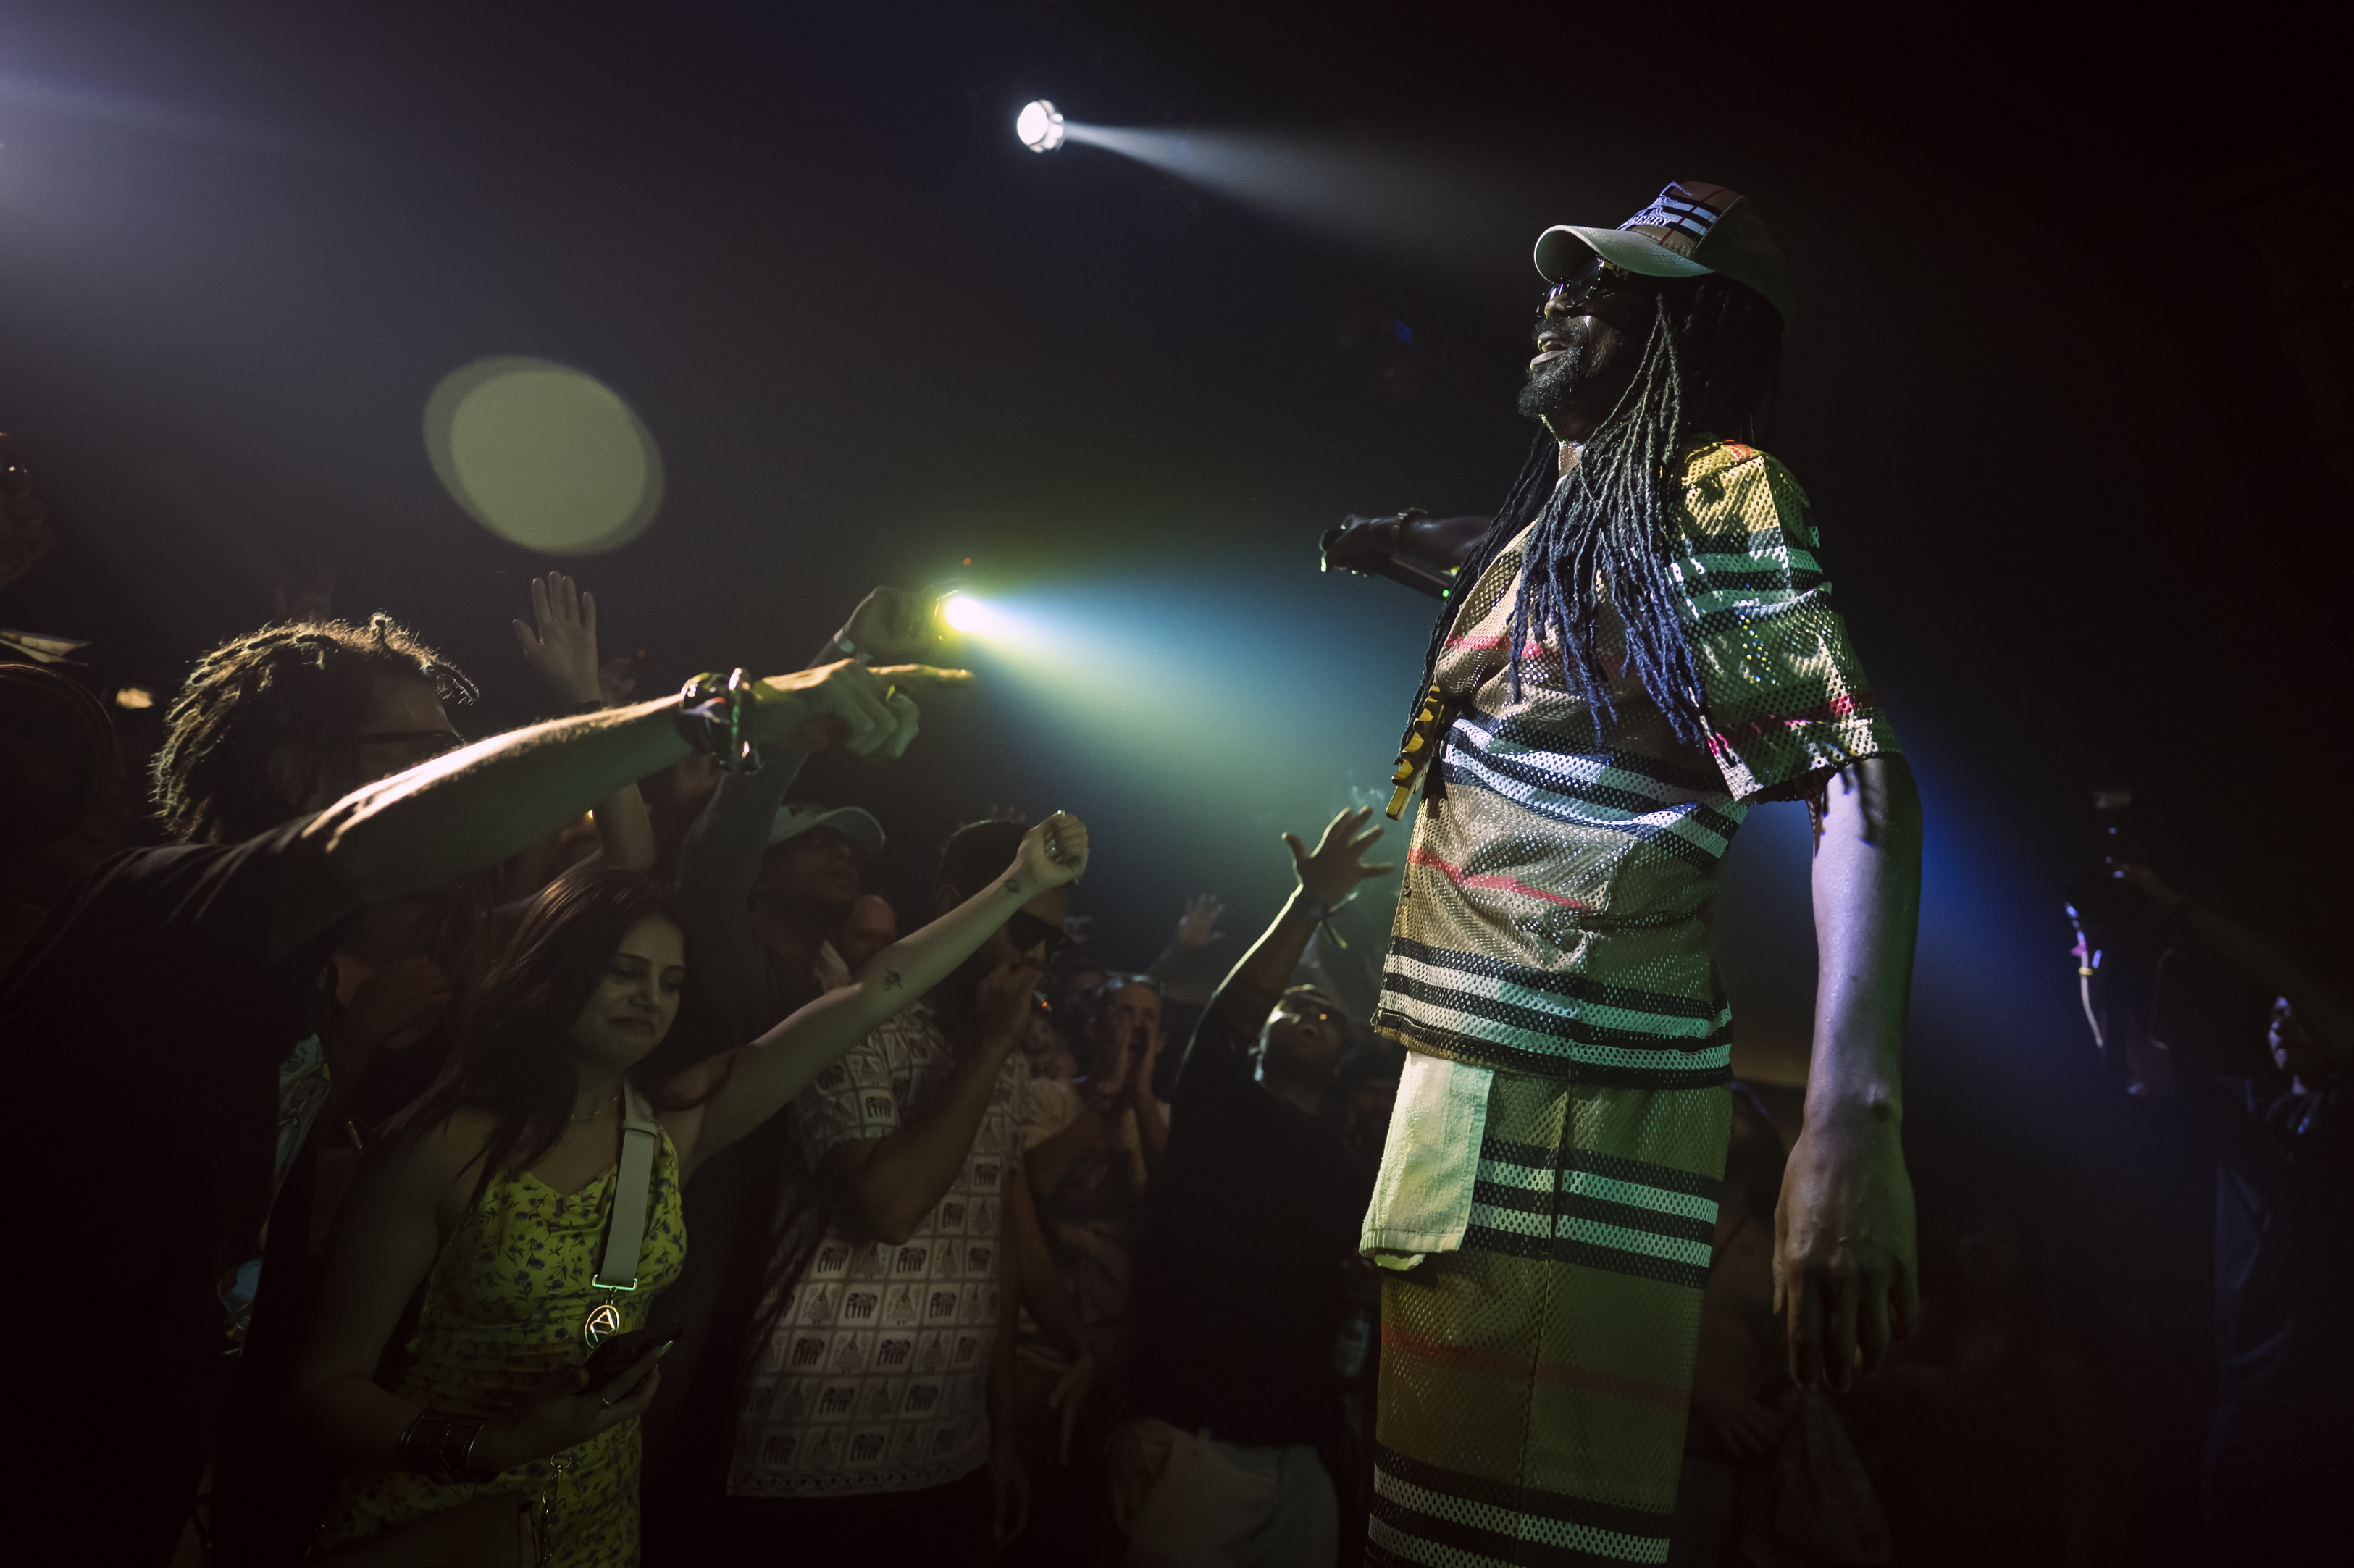 Goa Sunsplash | India's Biggest Reggae Festival